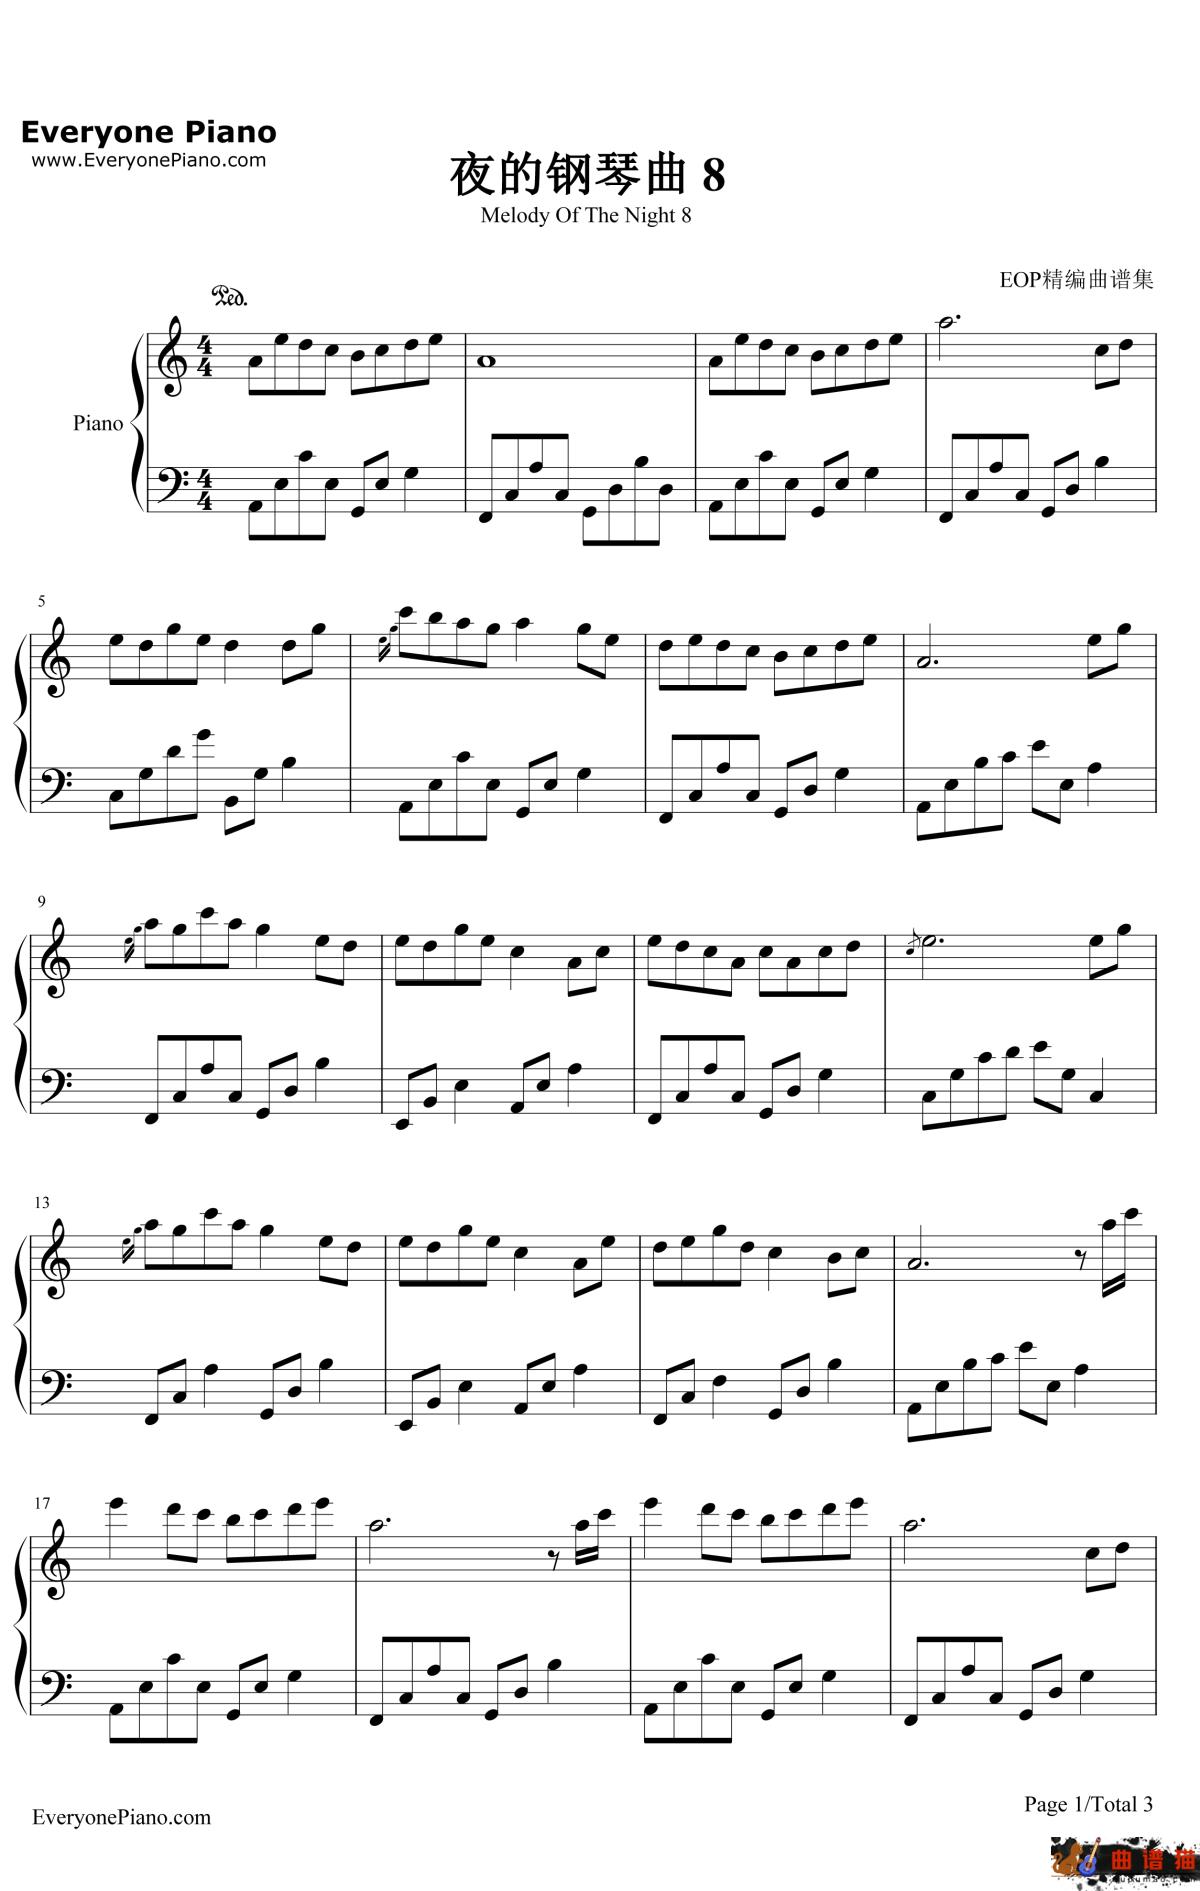 夜的钢琴曲8钢琴谱-石进-夜的钢琴曲8